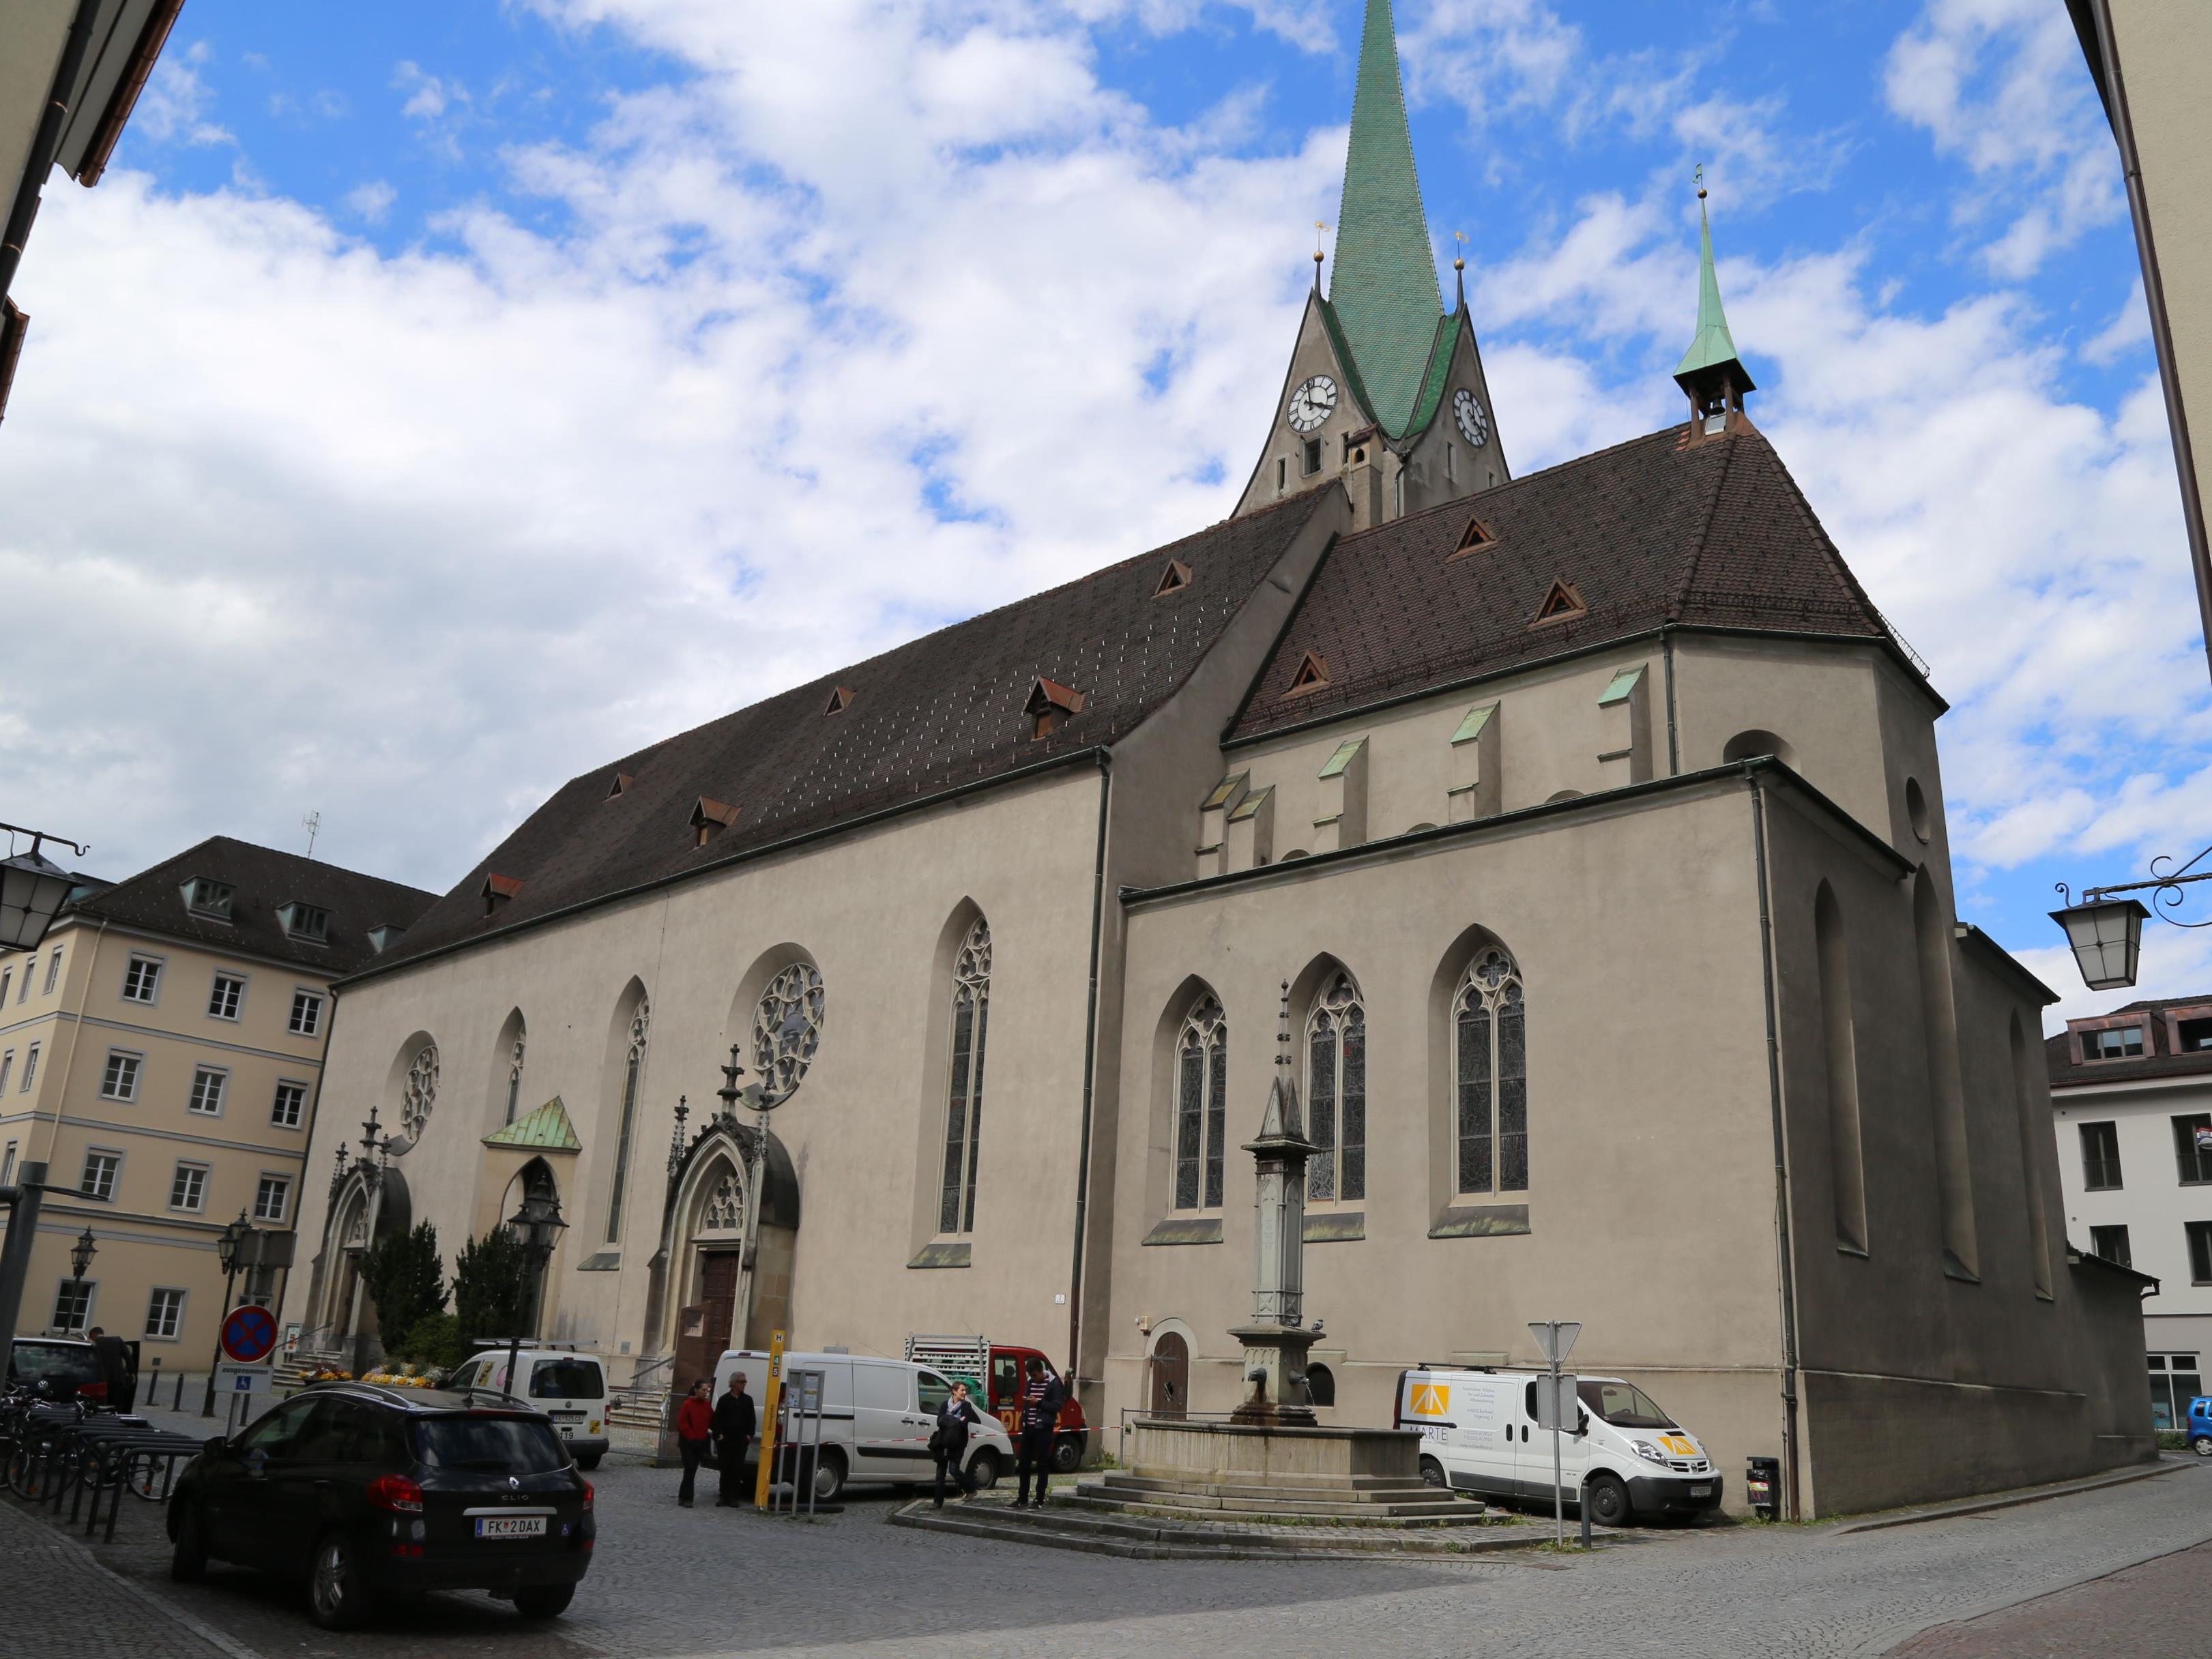 Unter dem Motto "Ein Jubiläum für alle" feiert die Diözese Feldkirch mit zahlreichen Veranstaltungen ihr 50-jähriges Bestehen.